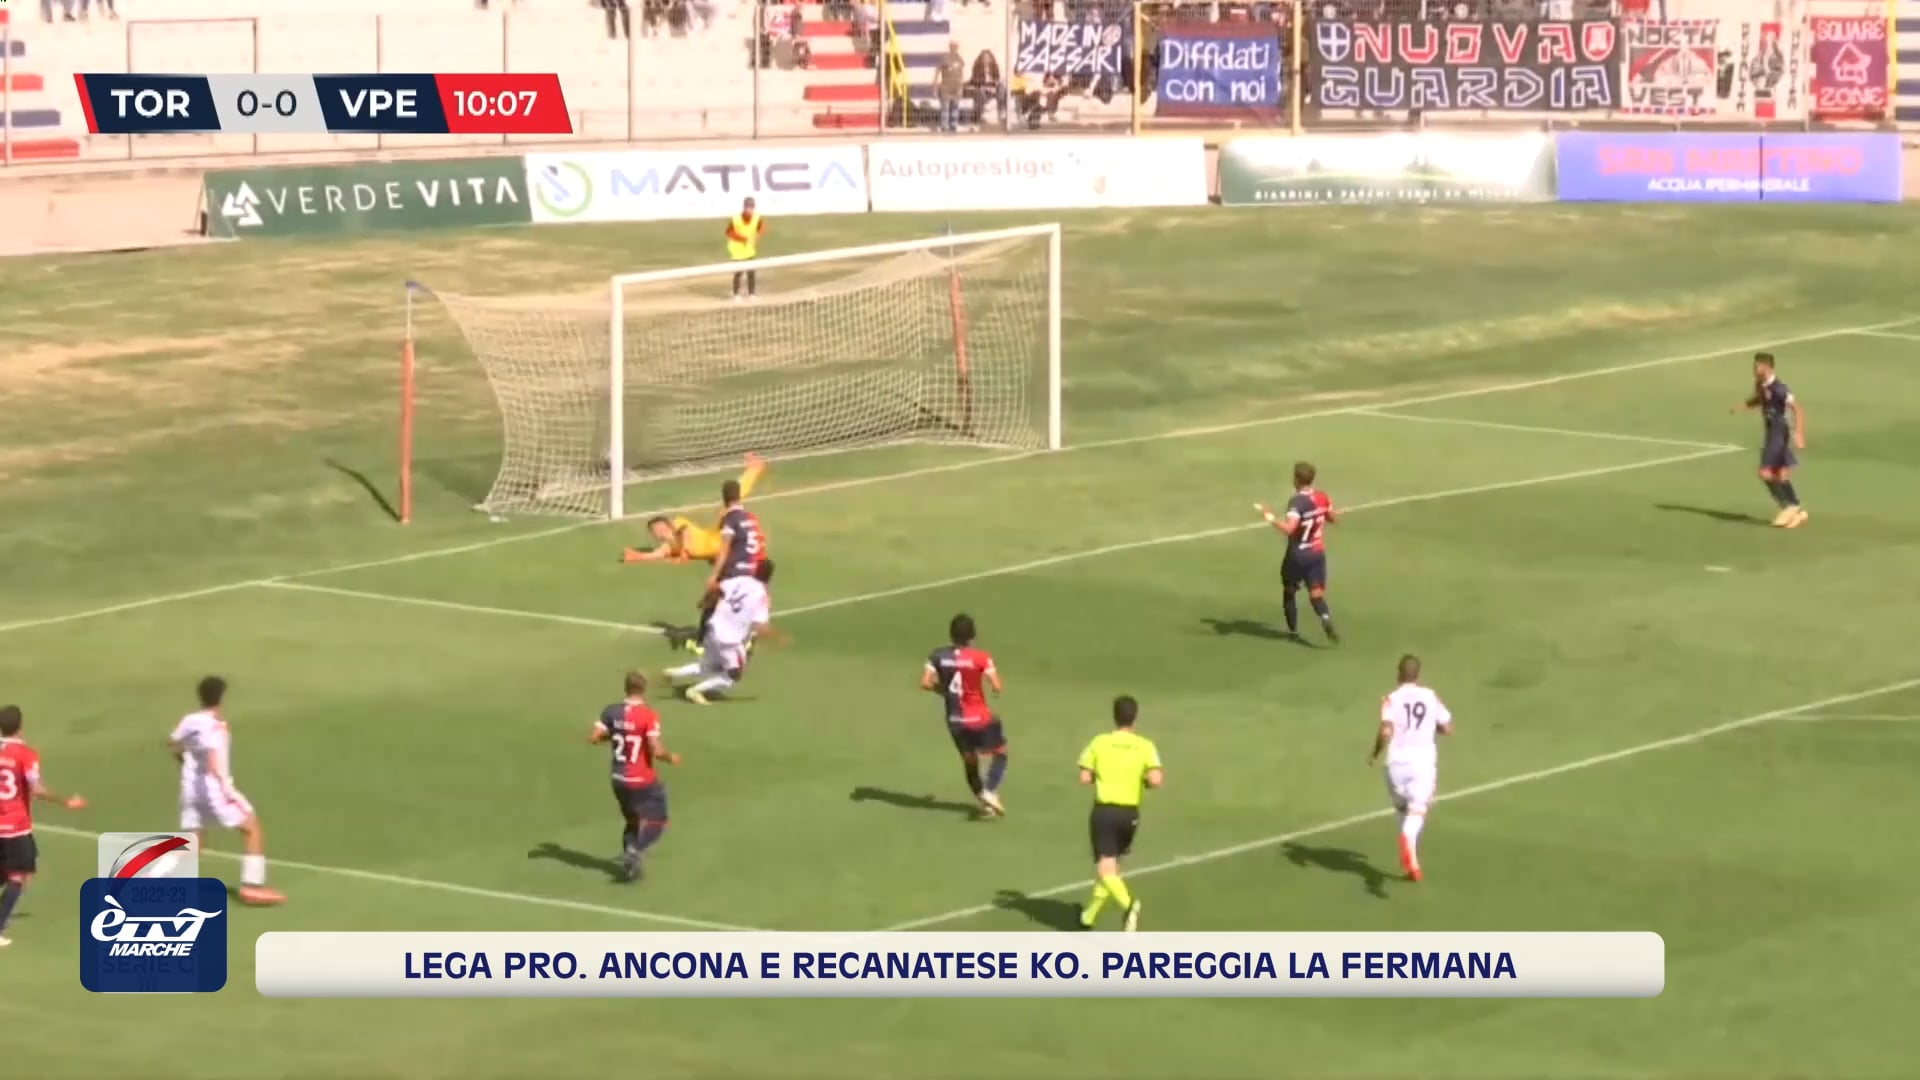 Lega Pro, una sconfitta per Ancona e Recanatese, mentre pareggia la Fermana - VIDEO